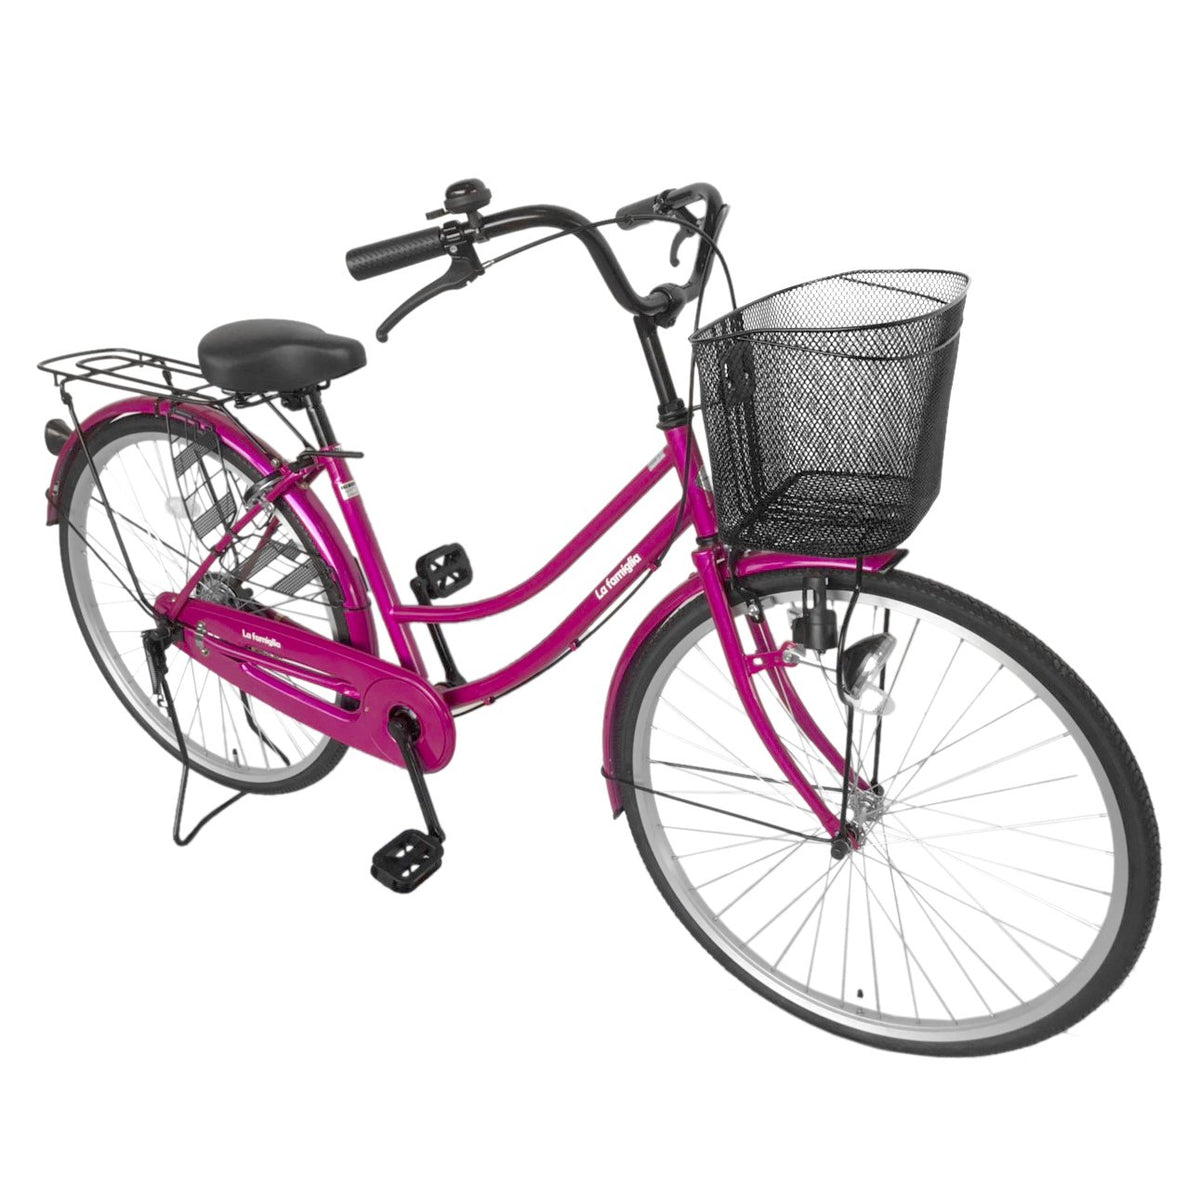 欠品入荷未定 La familia(ラ ファミリア) 自転車 ママチャリ 26インチ ギアなし すそ ピンク